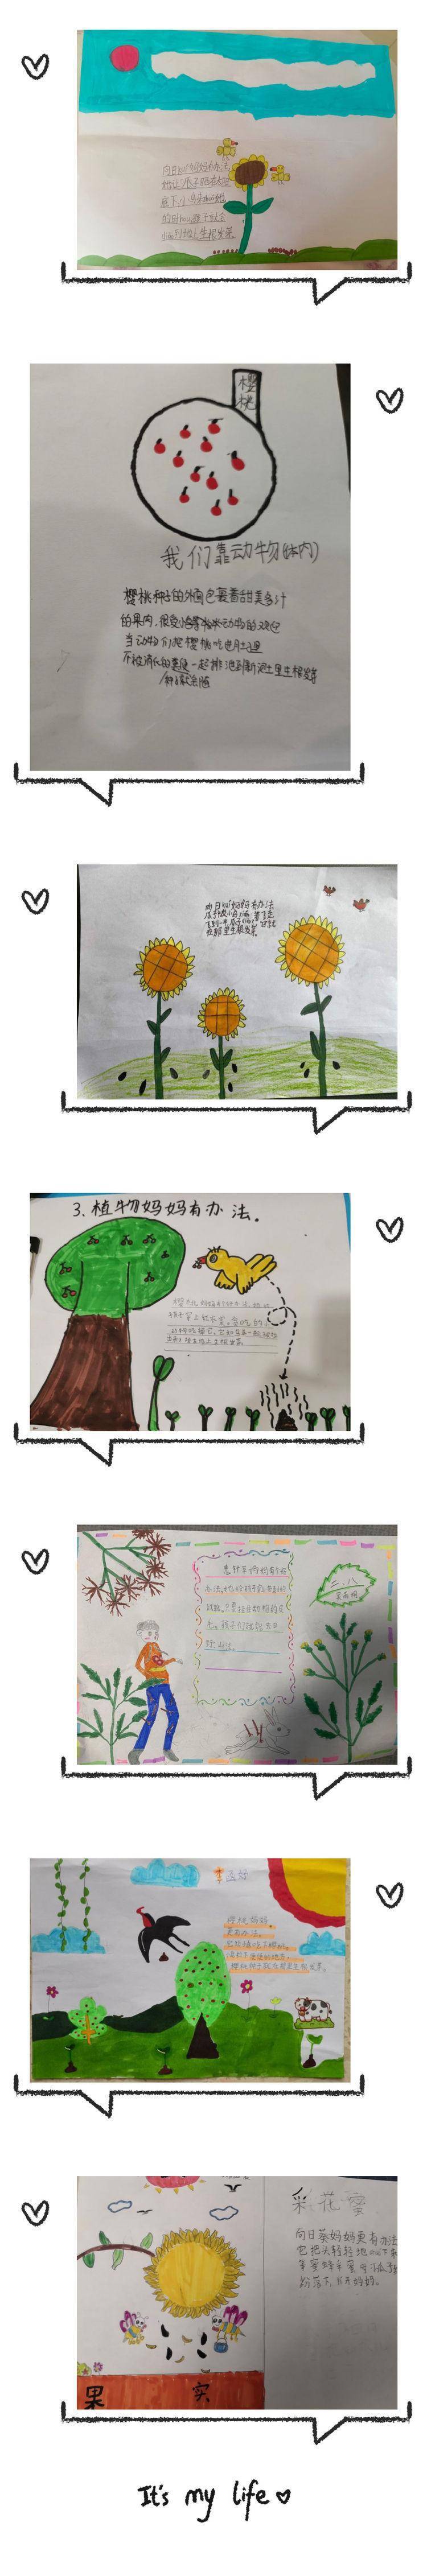 植物传播种子的秘密——郑州市惠济区金洼小学二年级语文实践活动